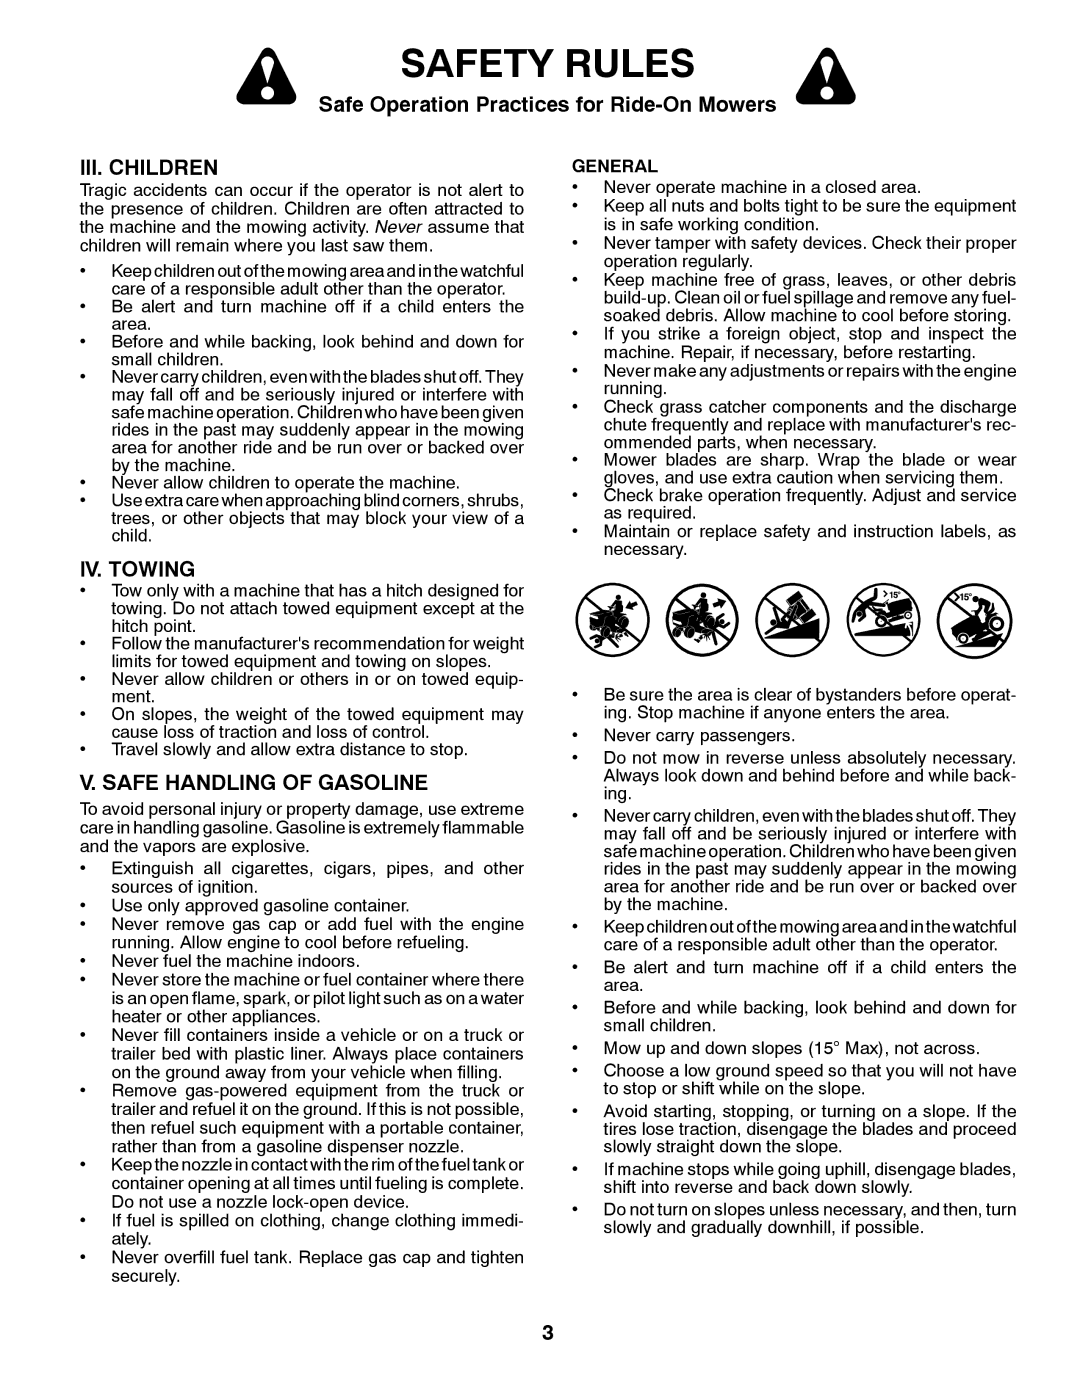 Husqvarna 917.28961 owner manual III. Children, IV. Towing, Safe Handling of Gasoline 